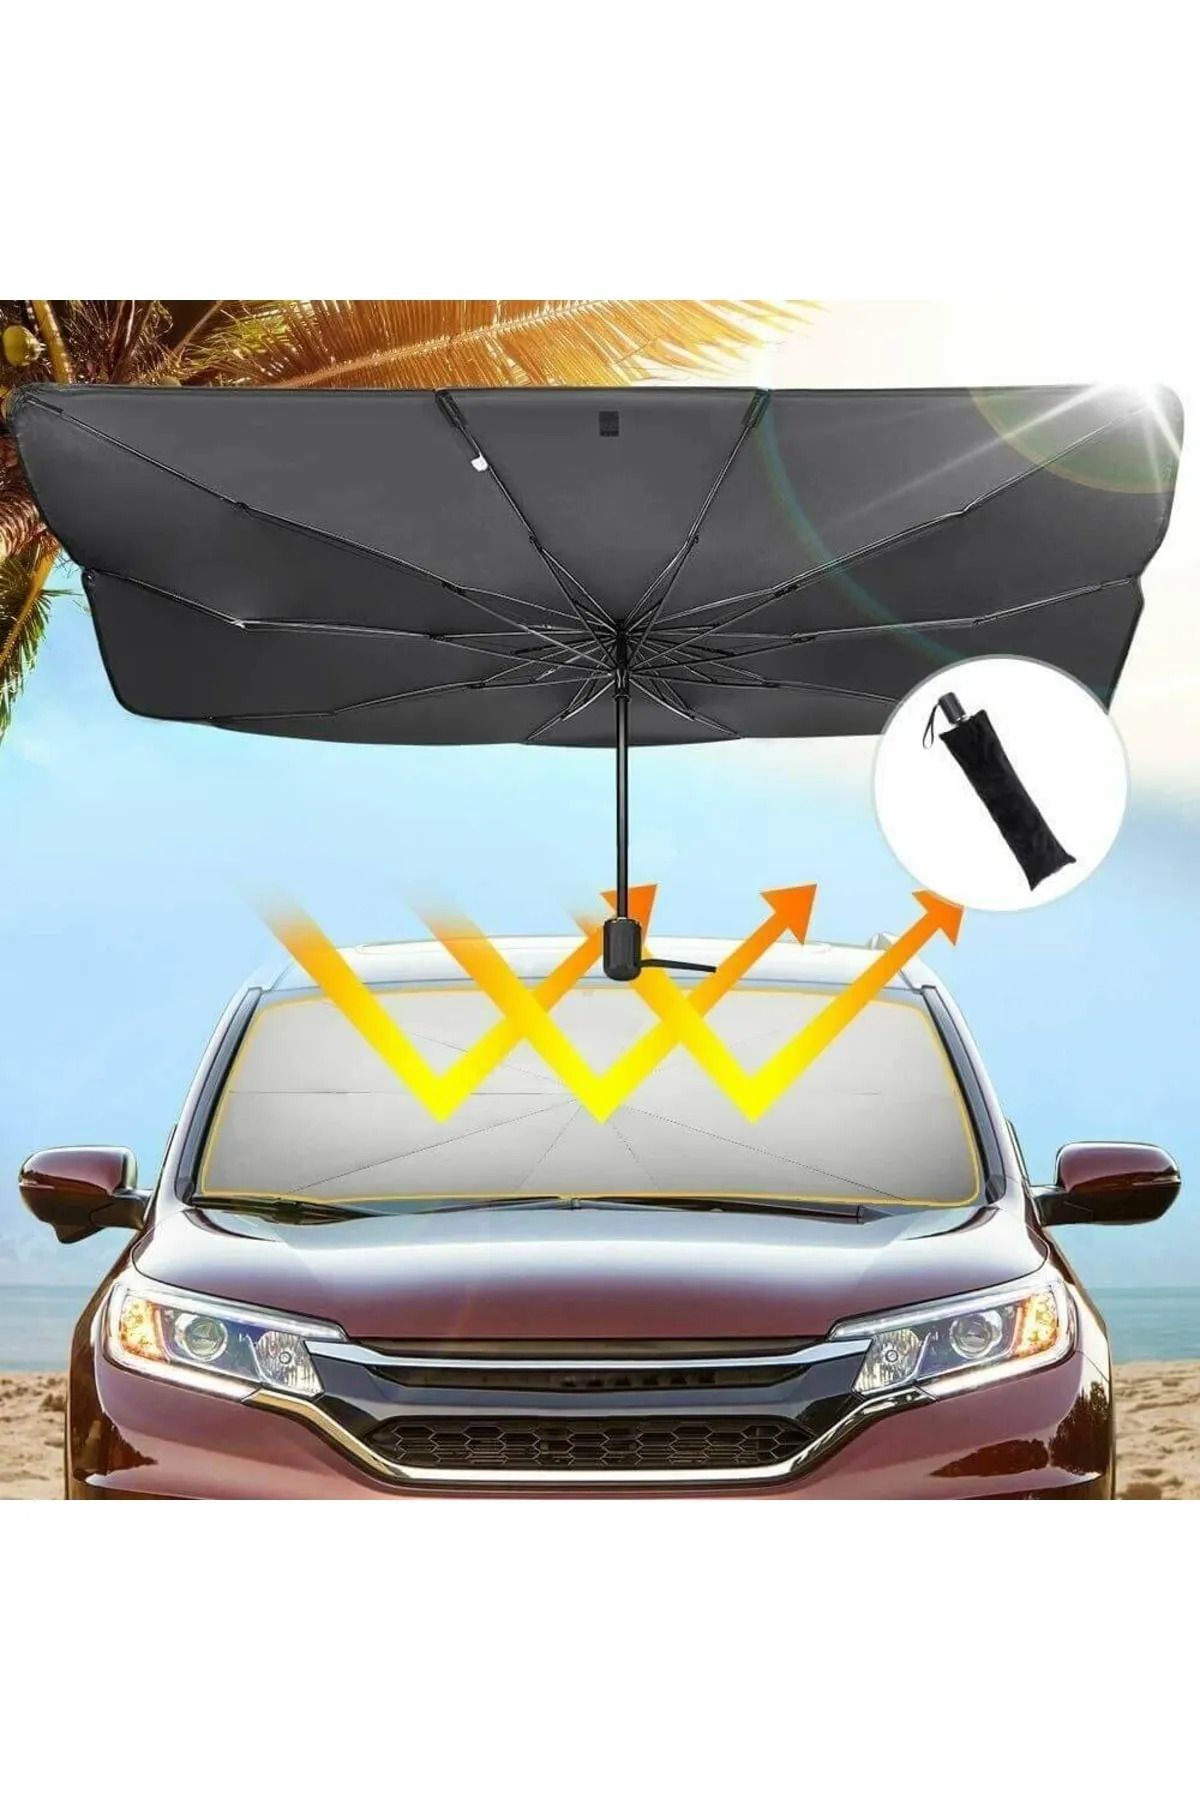 Universal Seat Ronda Araba Ön Cam Güneşlik Katlanabilir Güneşlik Şemsiye Ön Cam Gölgelik